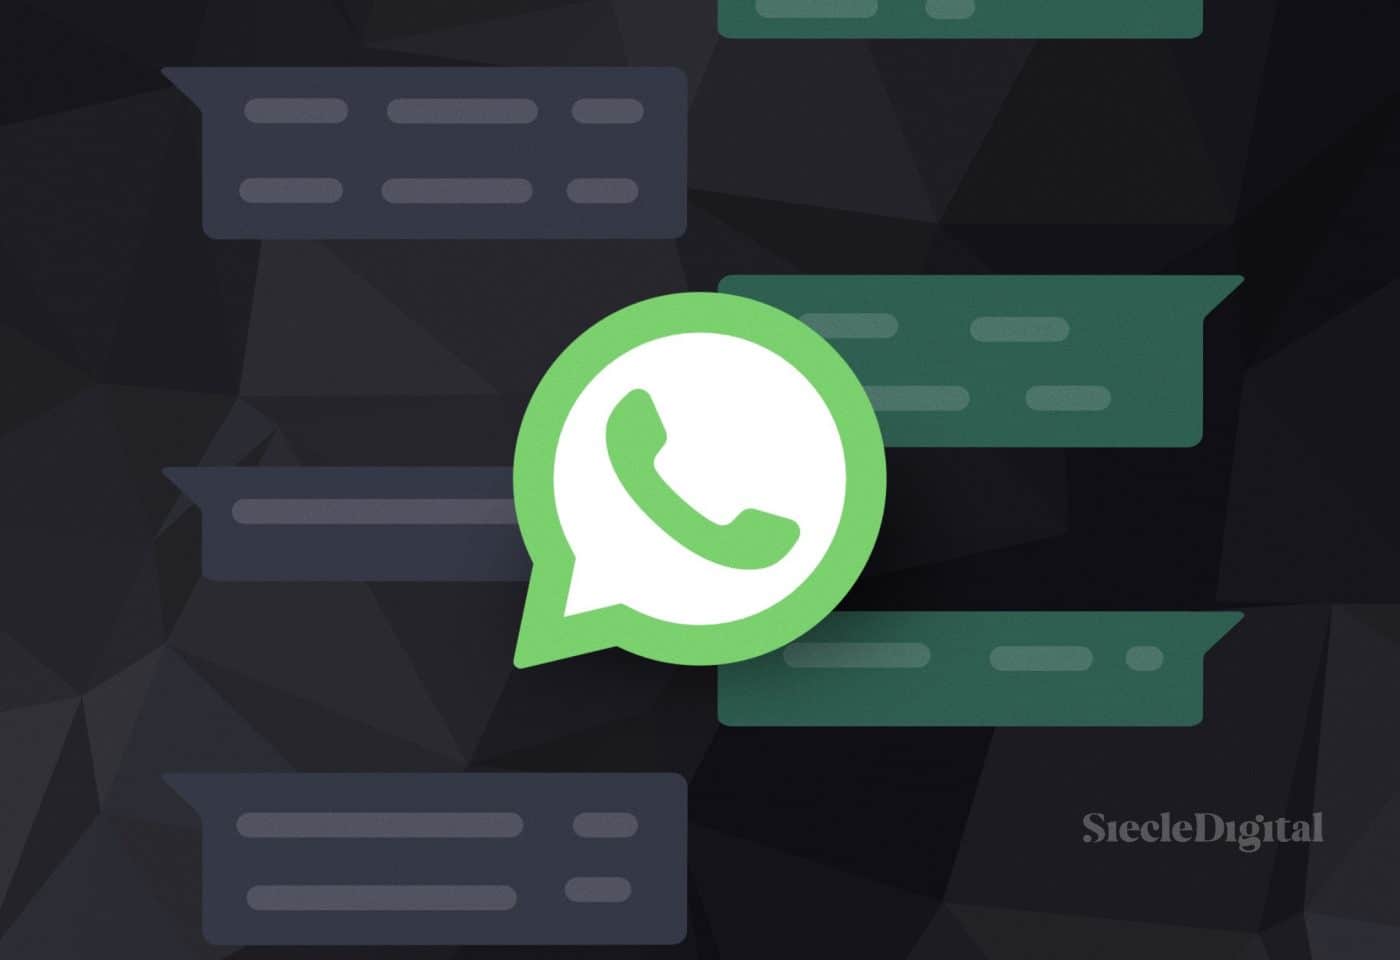 Le logo de WhatsApp